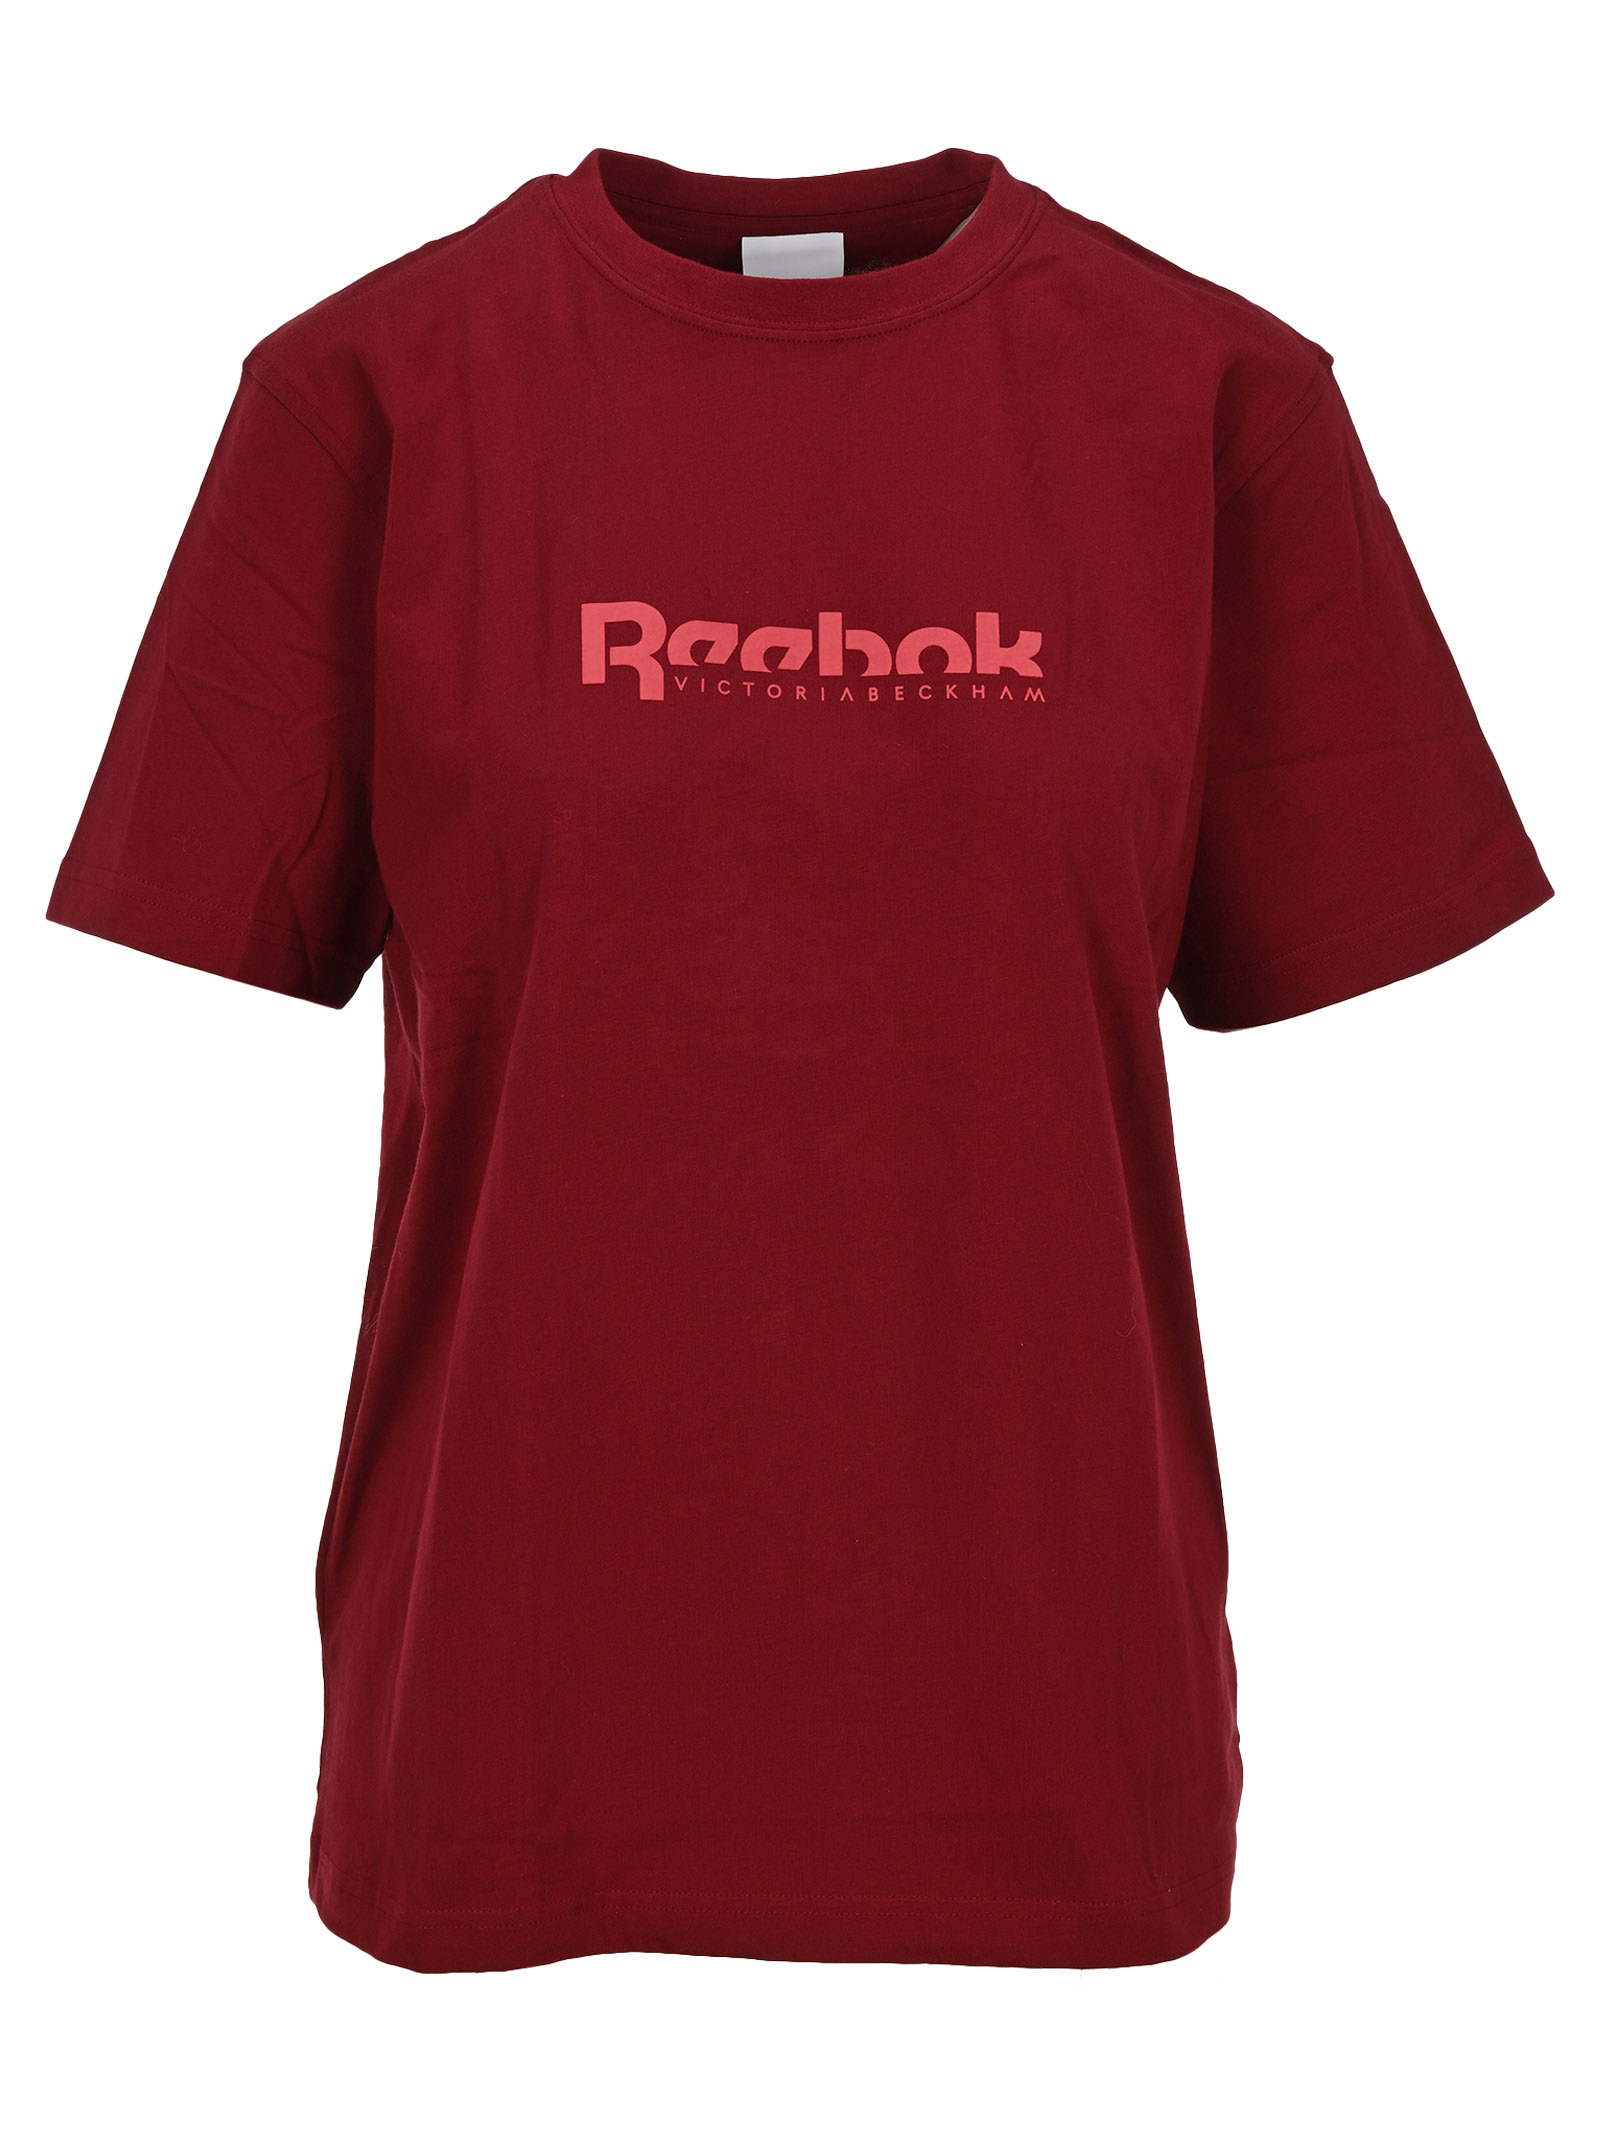 Reebok X Victoria Beckham Logo Print T-shirt